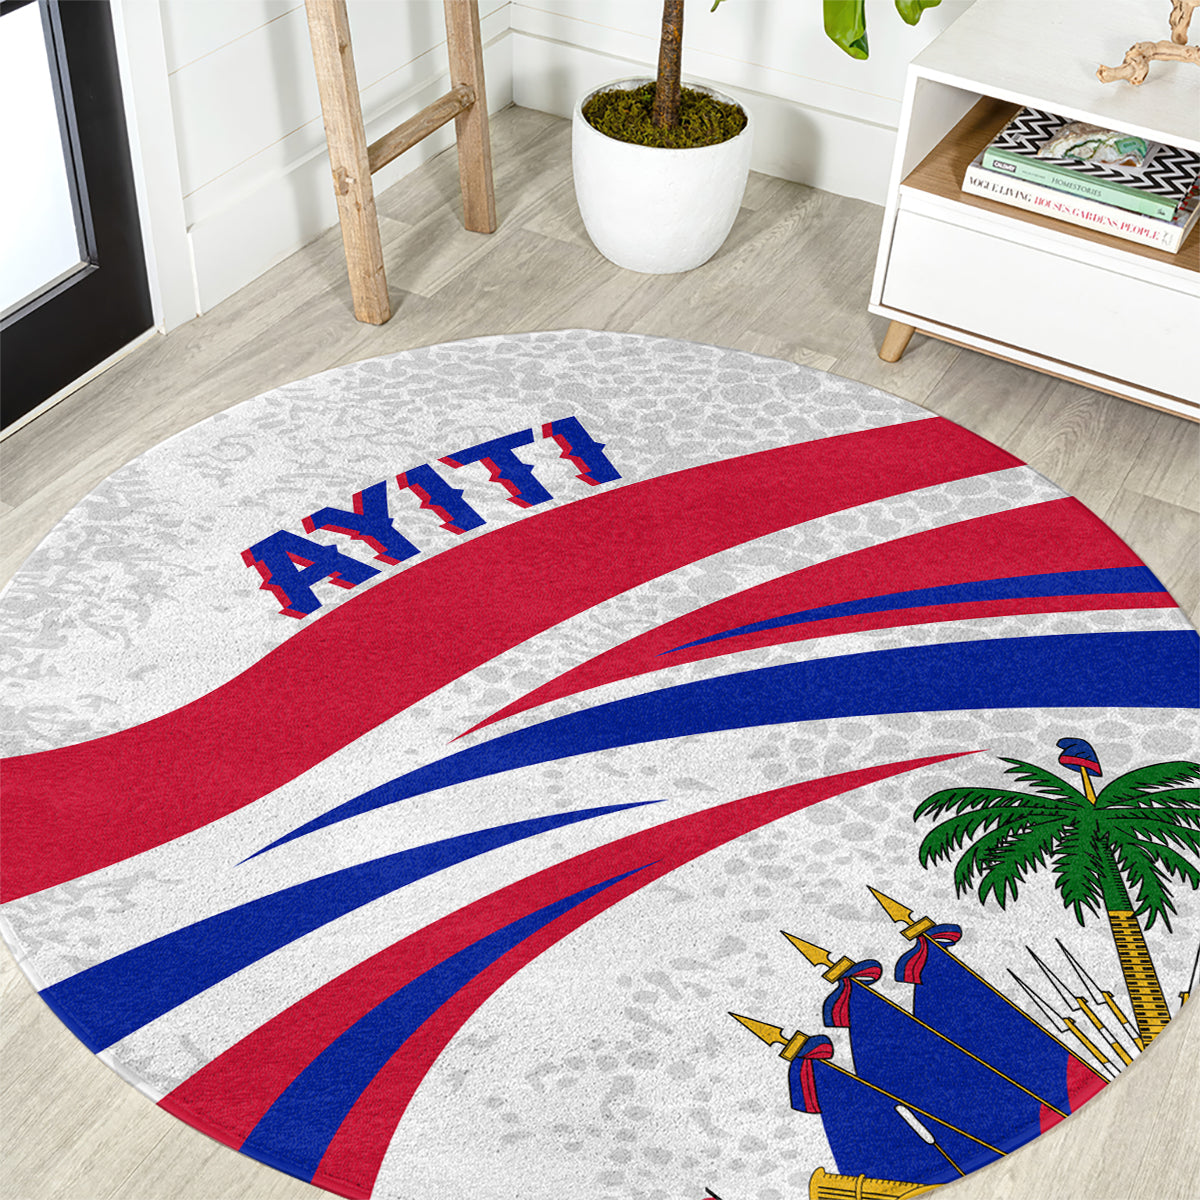 haiti-independence-anniversary-round-carpet-ayiti-basic-style